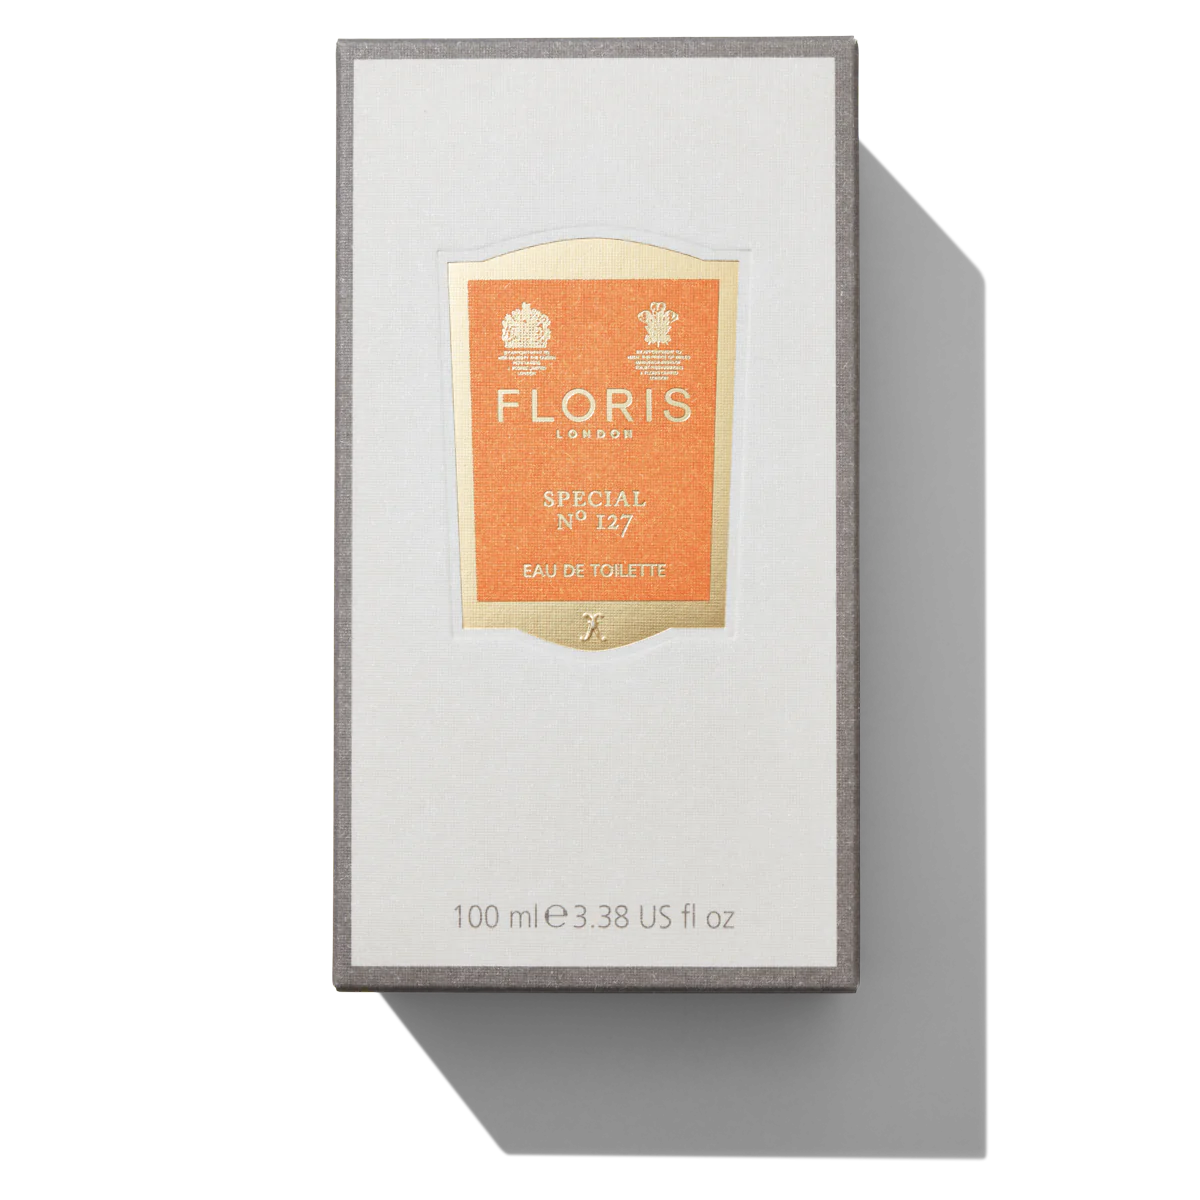 Floris London Special No. 127 Eau de Toilette 100ml Box